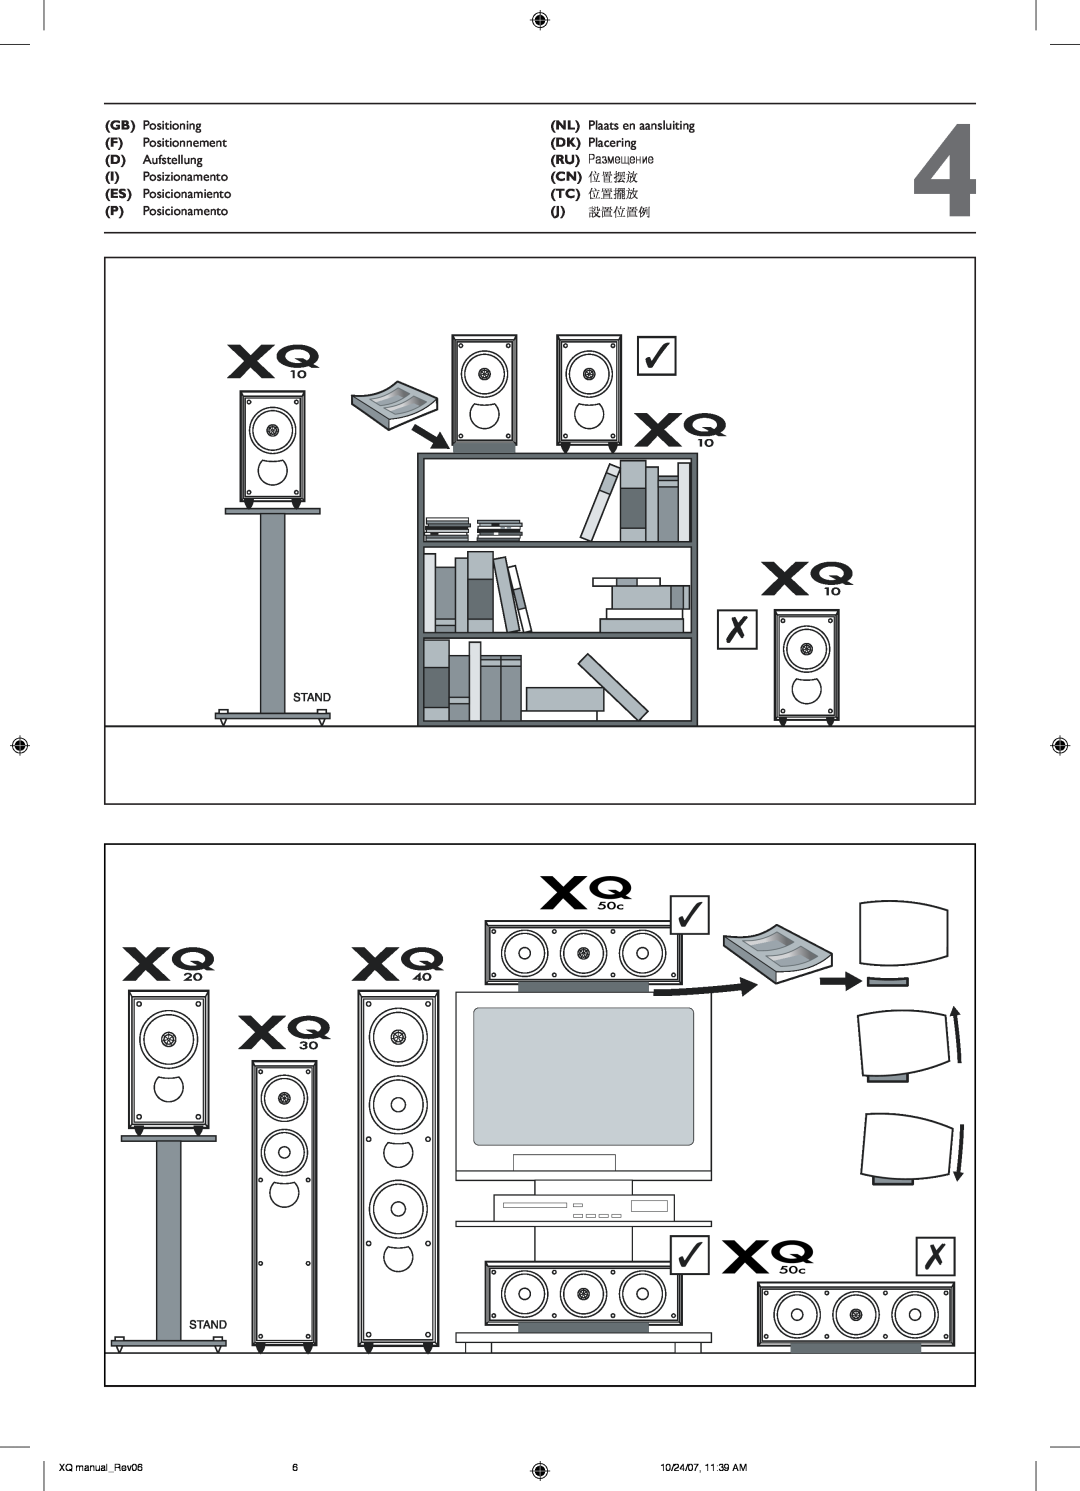 KEF Audio XQ20, XQ50C, XQ30, XQ40, XQ10 installation manual GB Positioning 